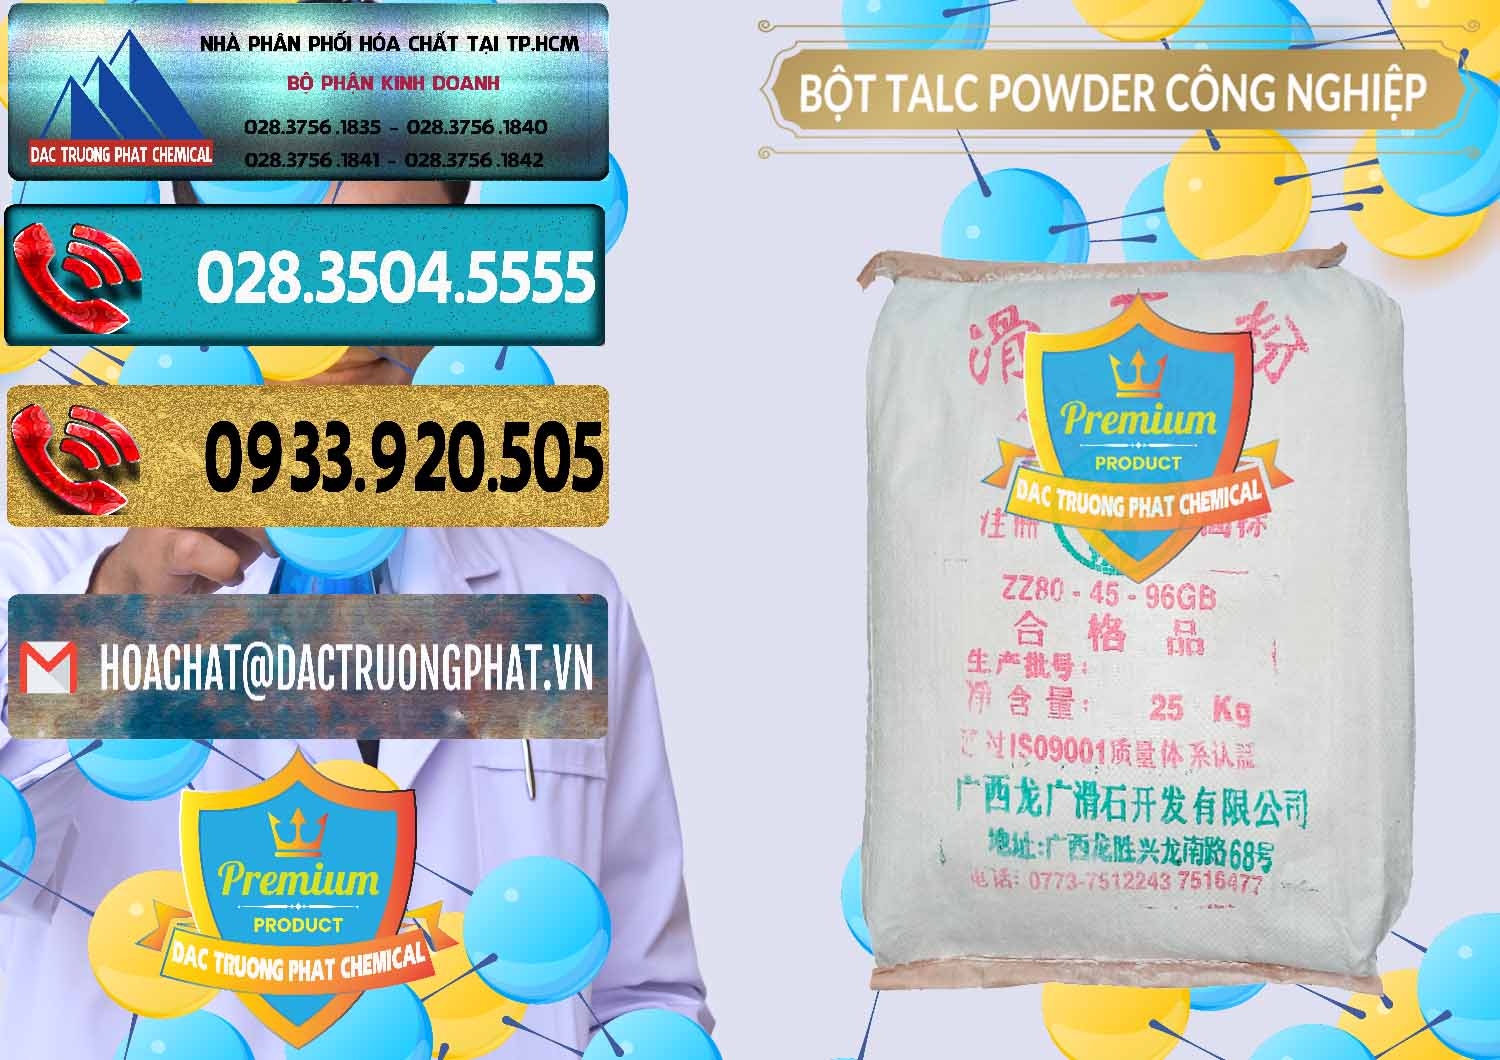 Cung cấp - bán Bột Talc Powder Công Nghiệp Trung Quốc China - 0037 - Công ty phân phối & cung cấp hóa chất tại TP.HCM - hoachatdetnhuom.com